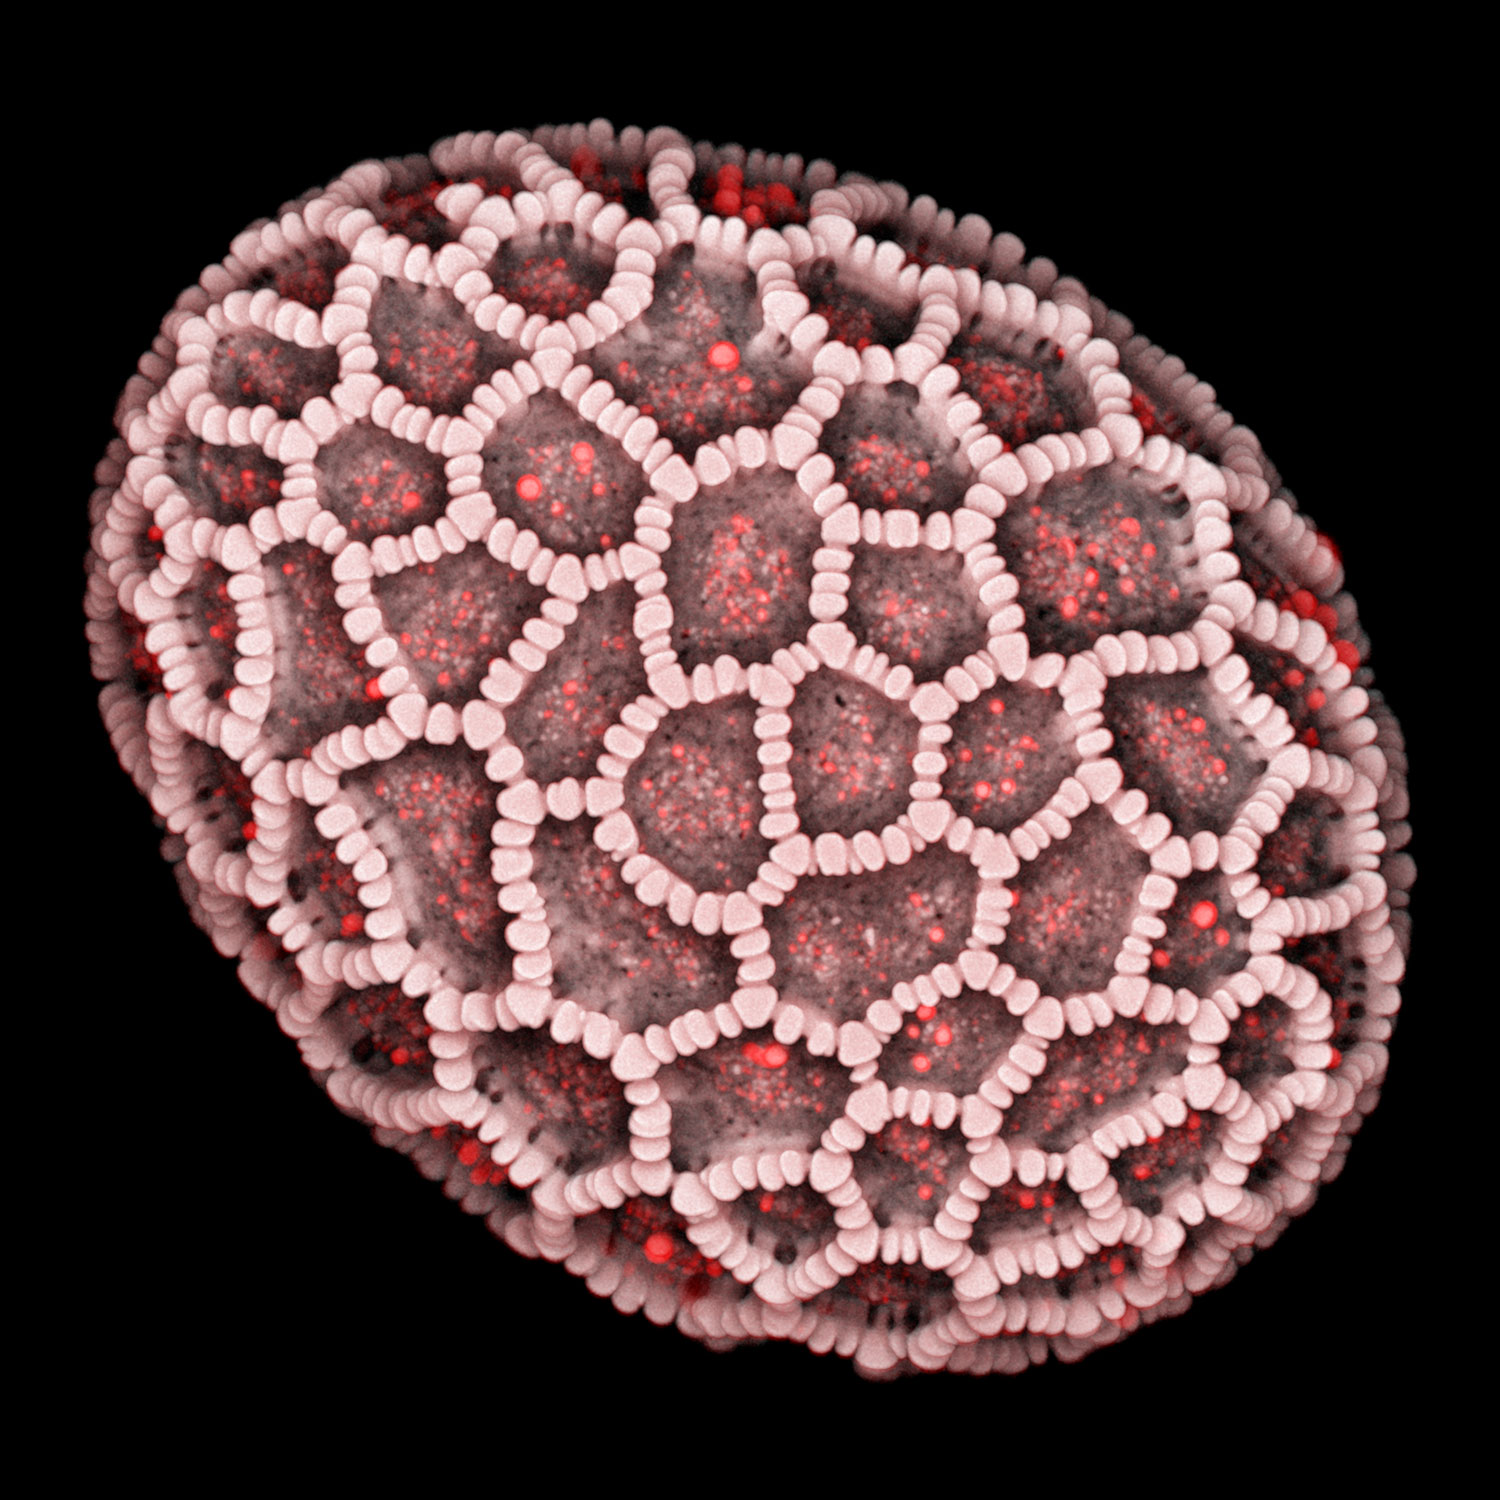 Airyscan 2のMultiplexモードで取得したヤマユリの花粉粒の顕微鏡画像。